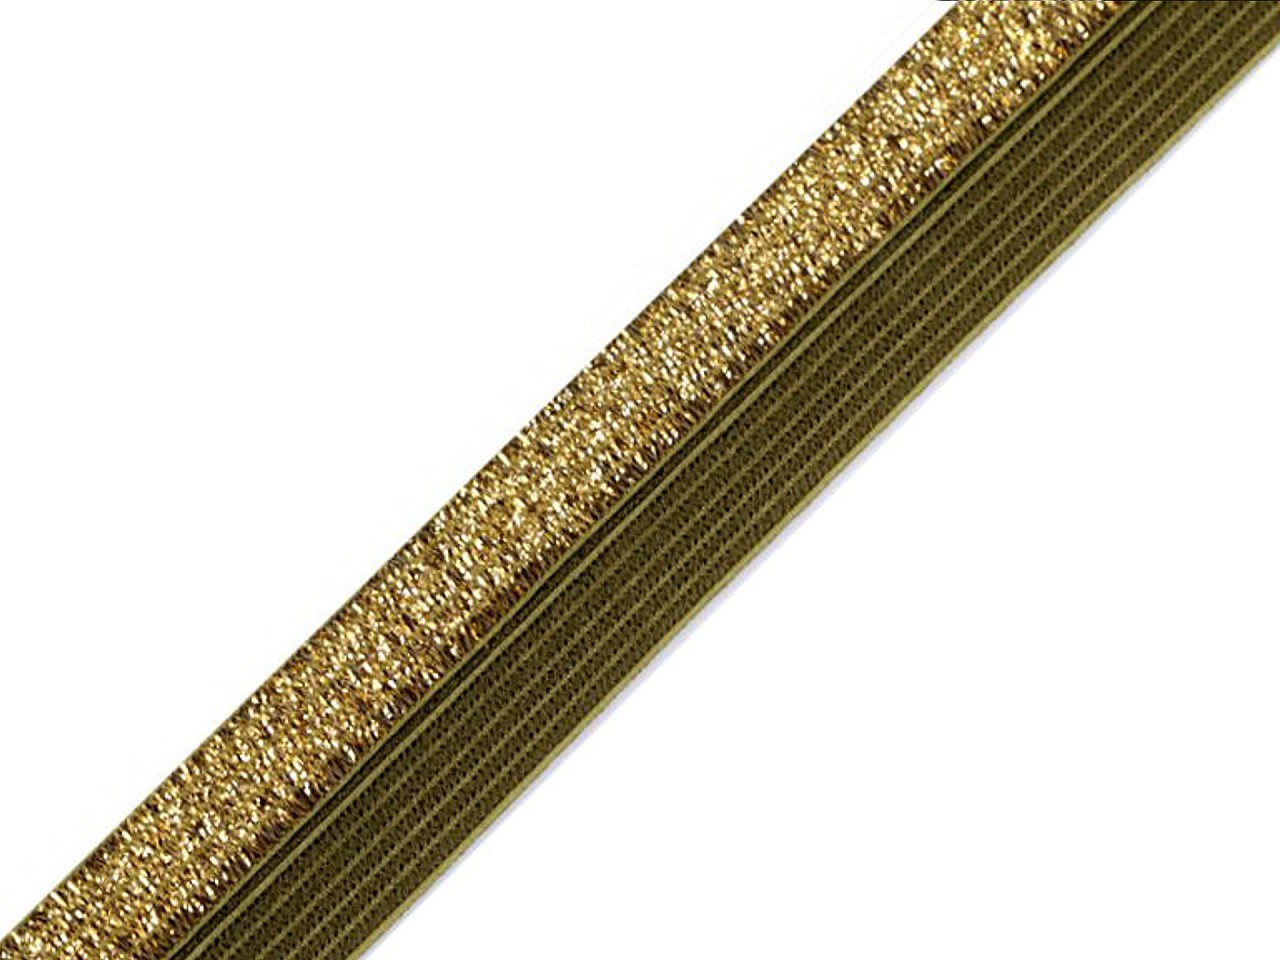 Lemovací pruženka půlená / lampas šíře 17 mm s lurexem, barva 12 zelená khaki zlatá